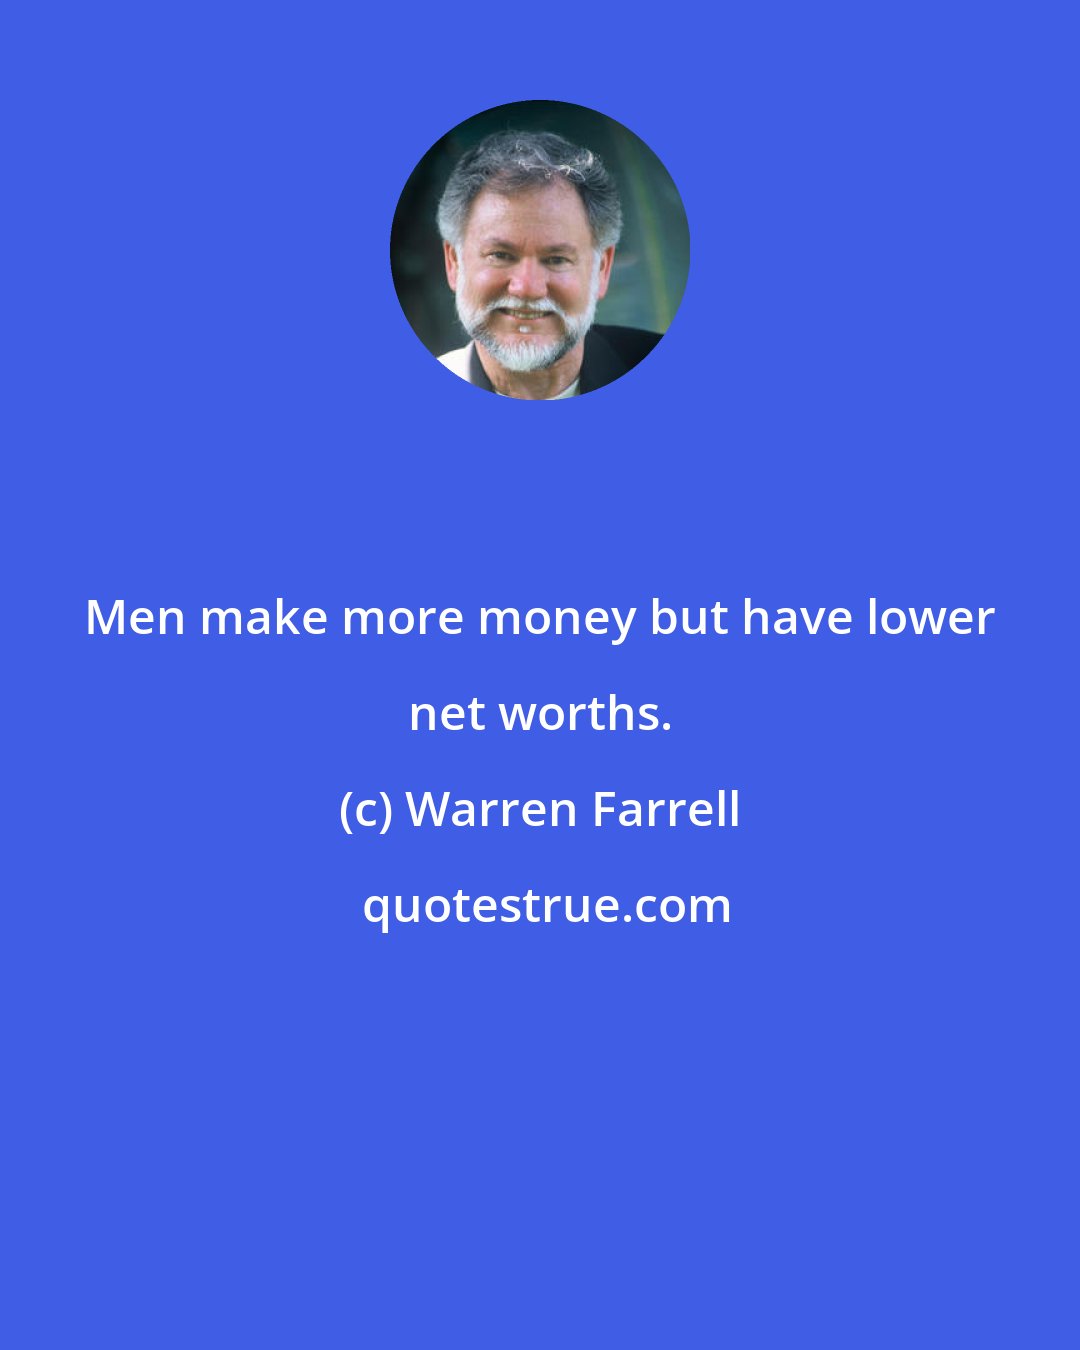 Warren Farrell: Men make more money but have lower net worths.